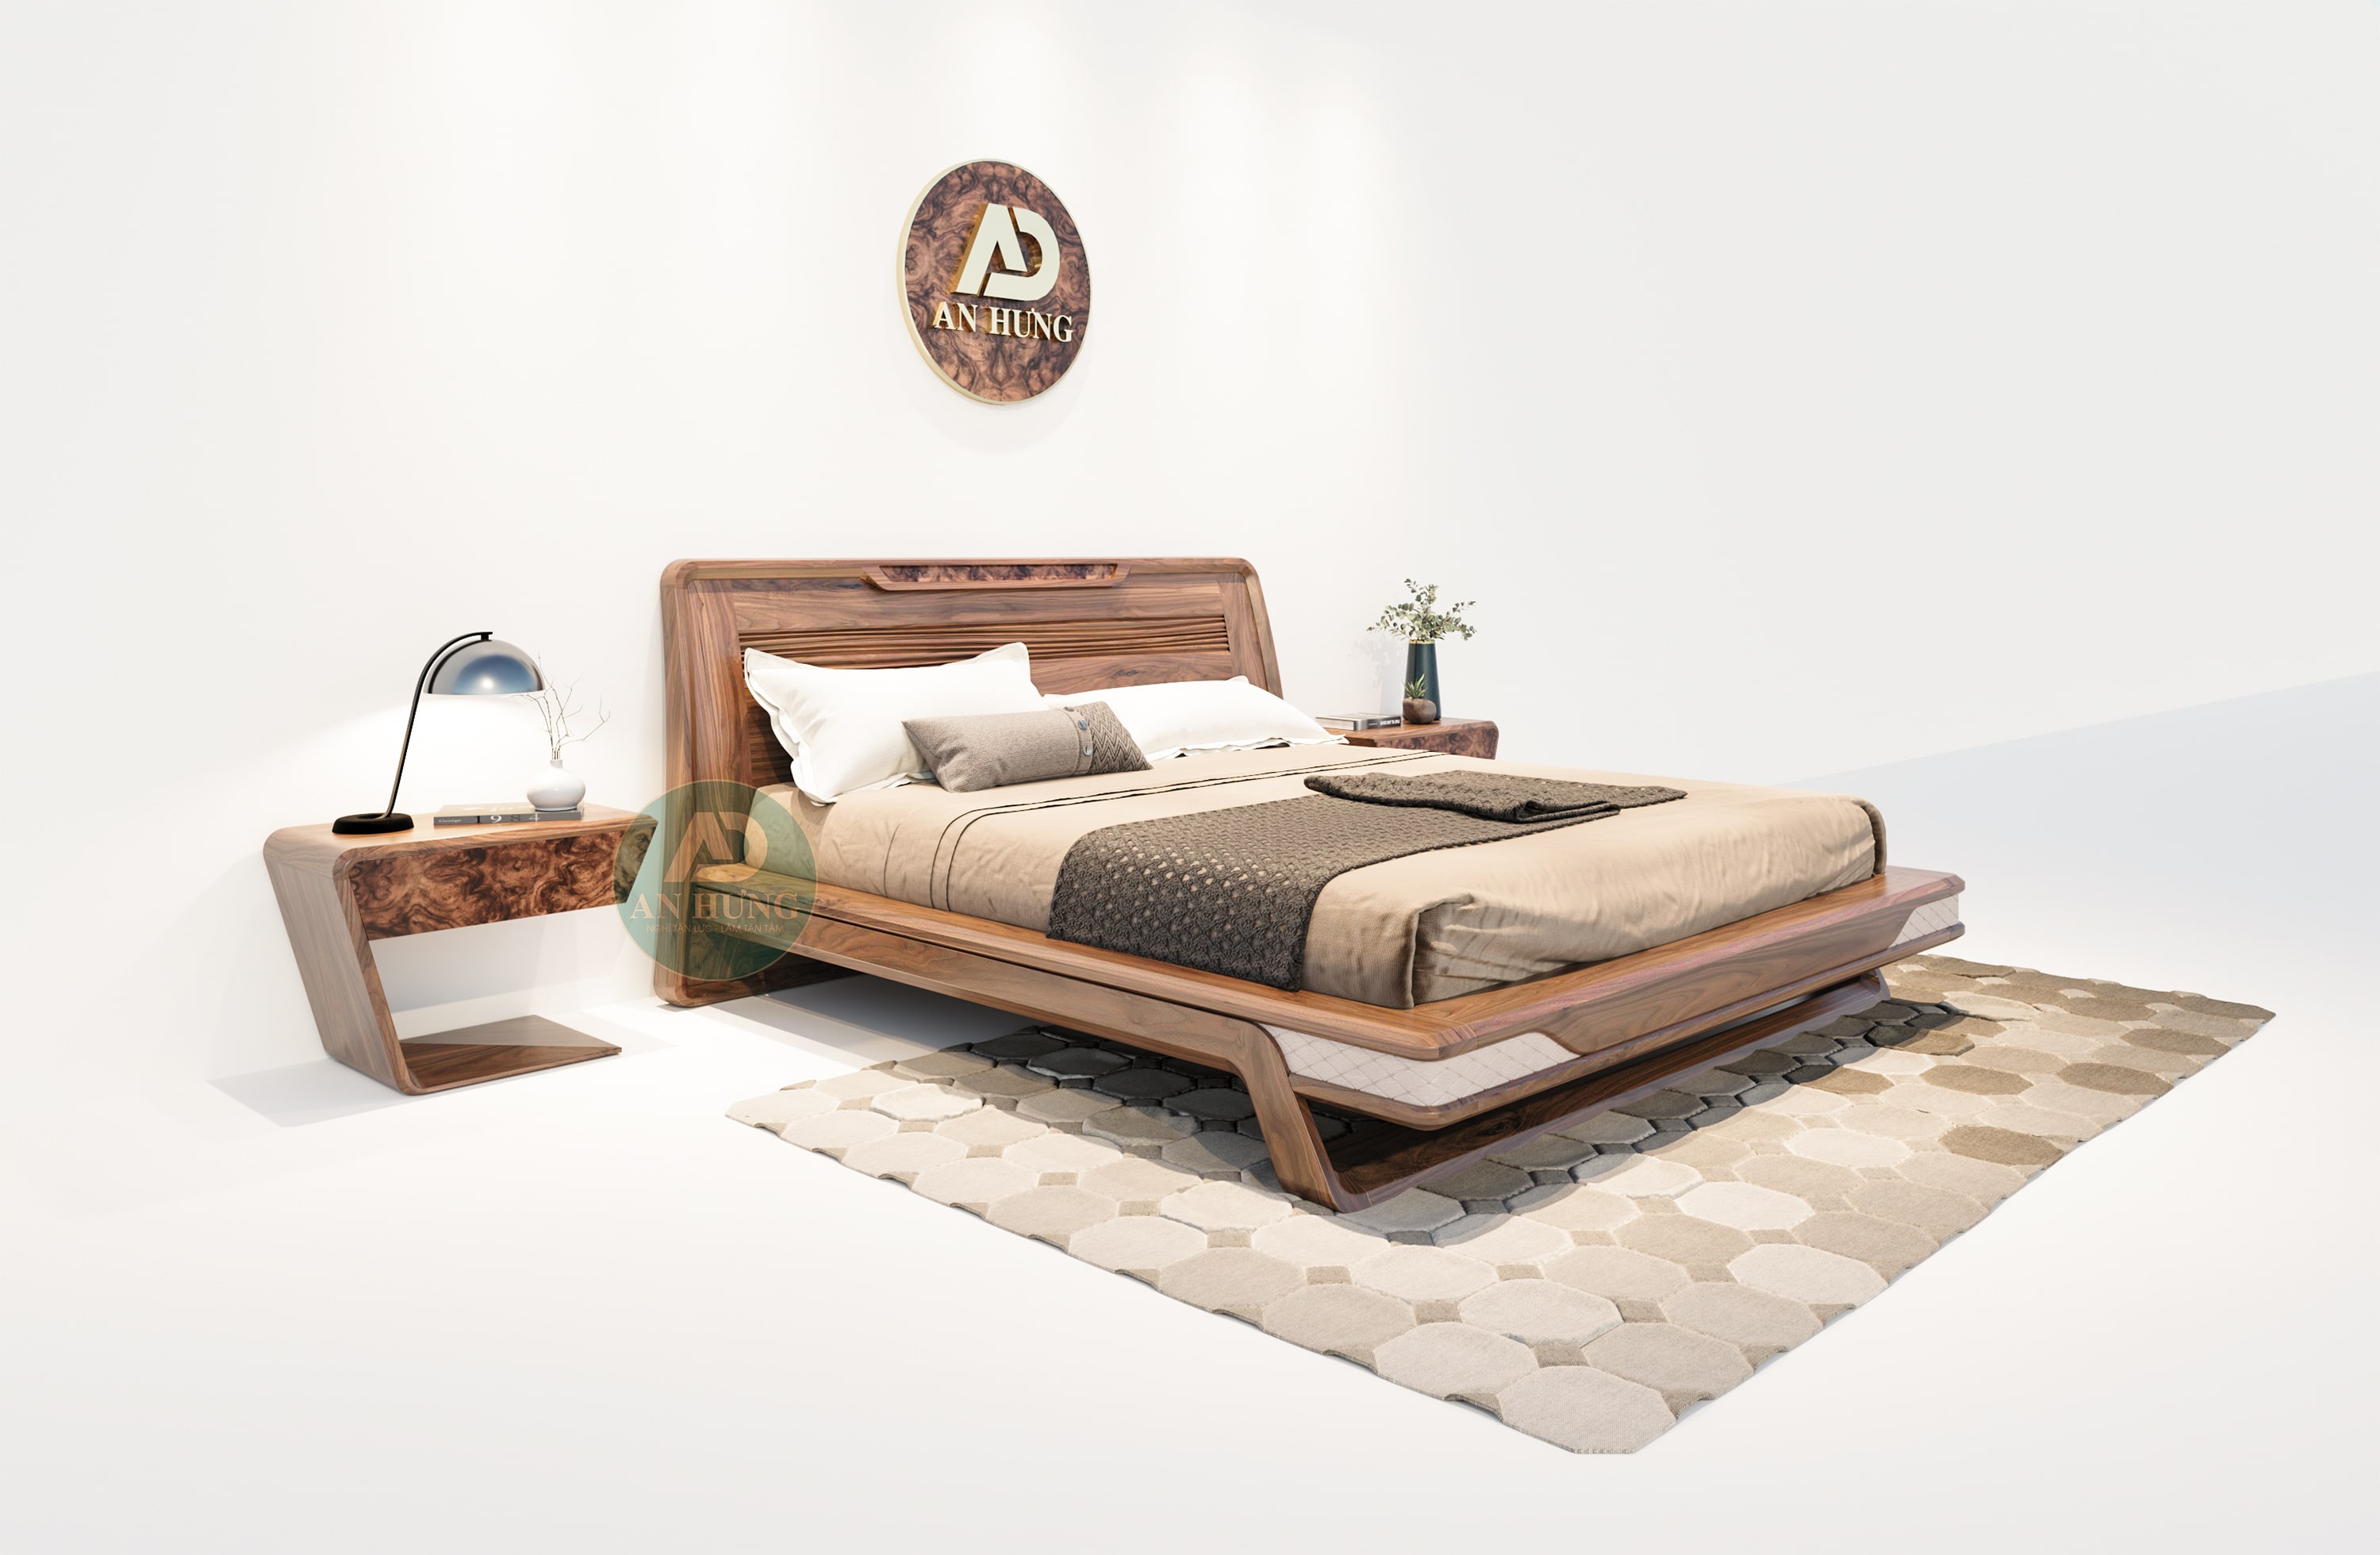 Mẫu giường gỗ óc chó sang trọng, hiện đại